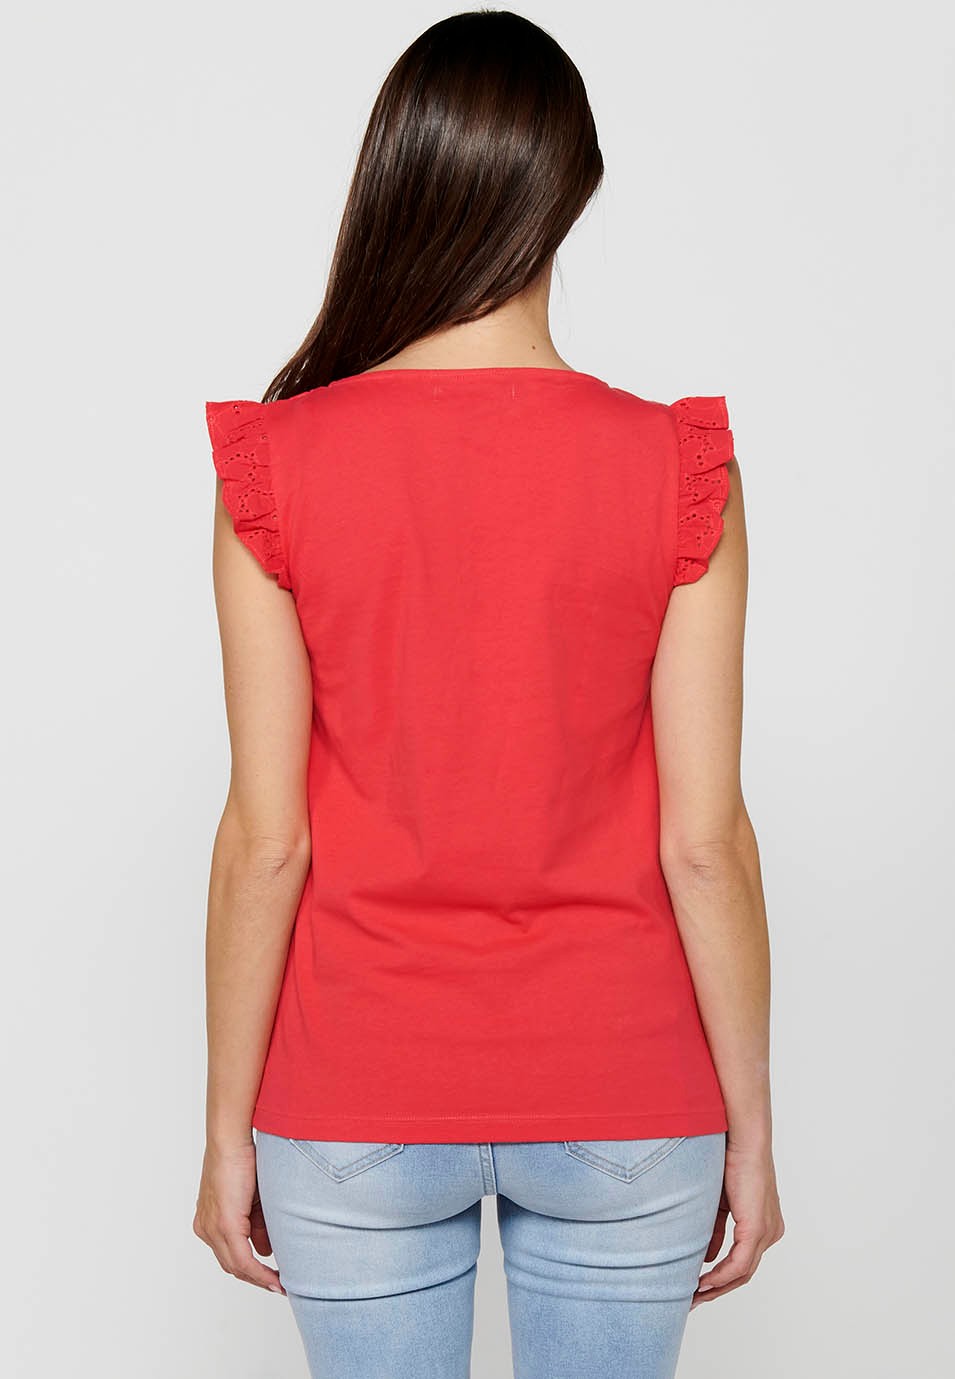 Damen-T-Shirt in Korallenfarbe mit kurzen Ärmeln, Rundhalsausschnitt und Rüschen an der Schulter